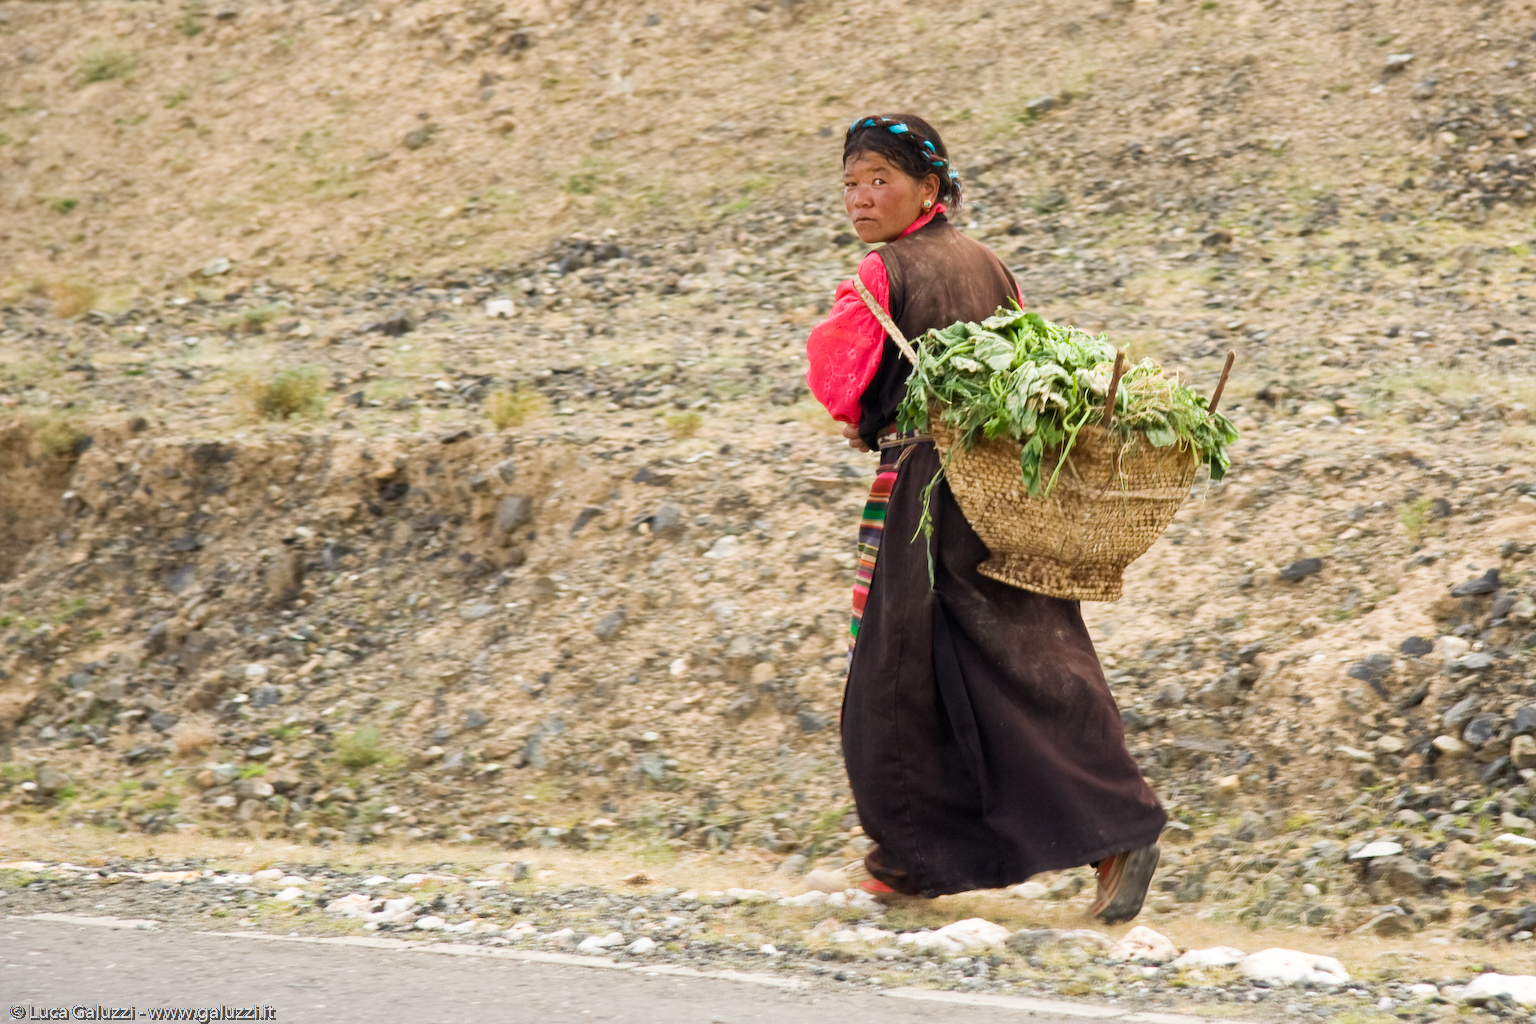 Le donne tibetane usano acconciare i capelli in due trecce, le ragazze in una sola.